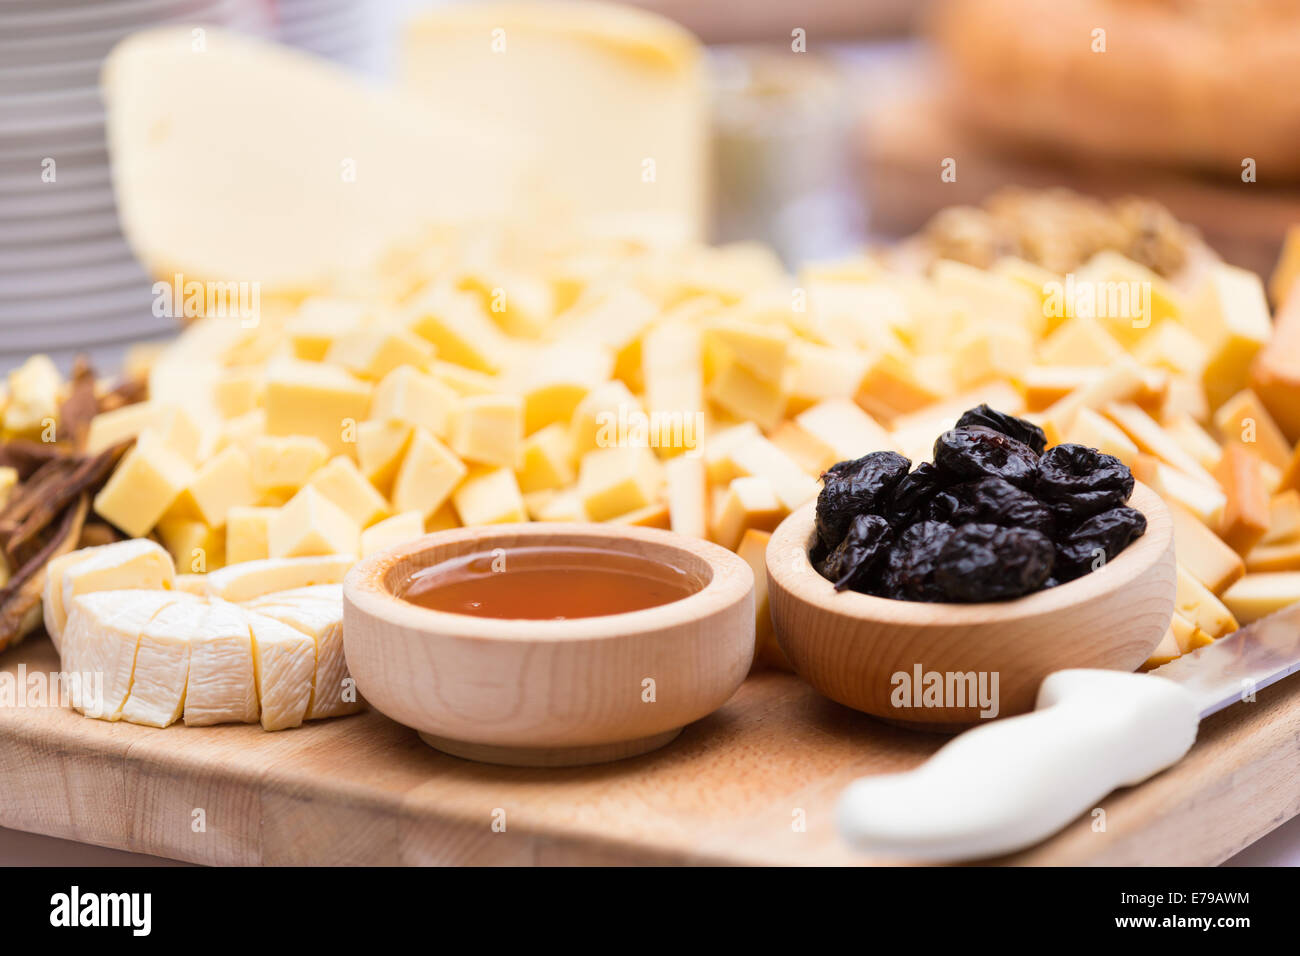 Assiette de fromage avec des fruits secs et du miel Banque D'Images